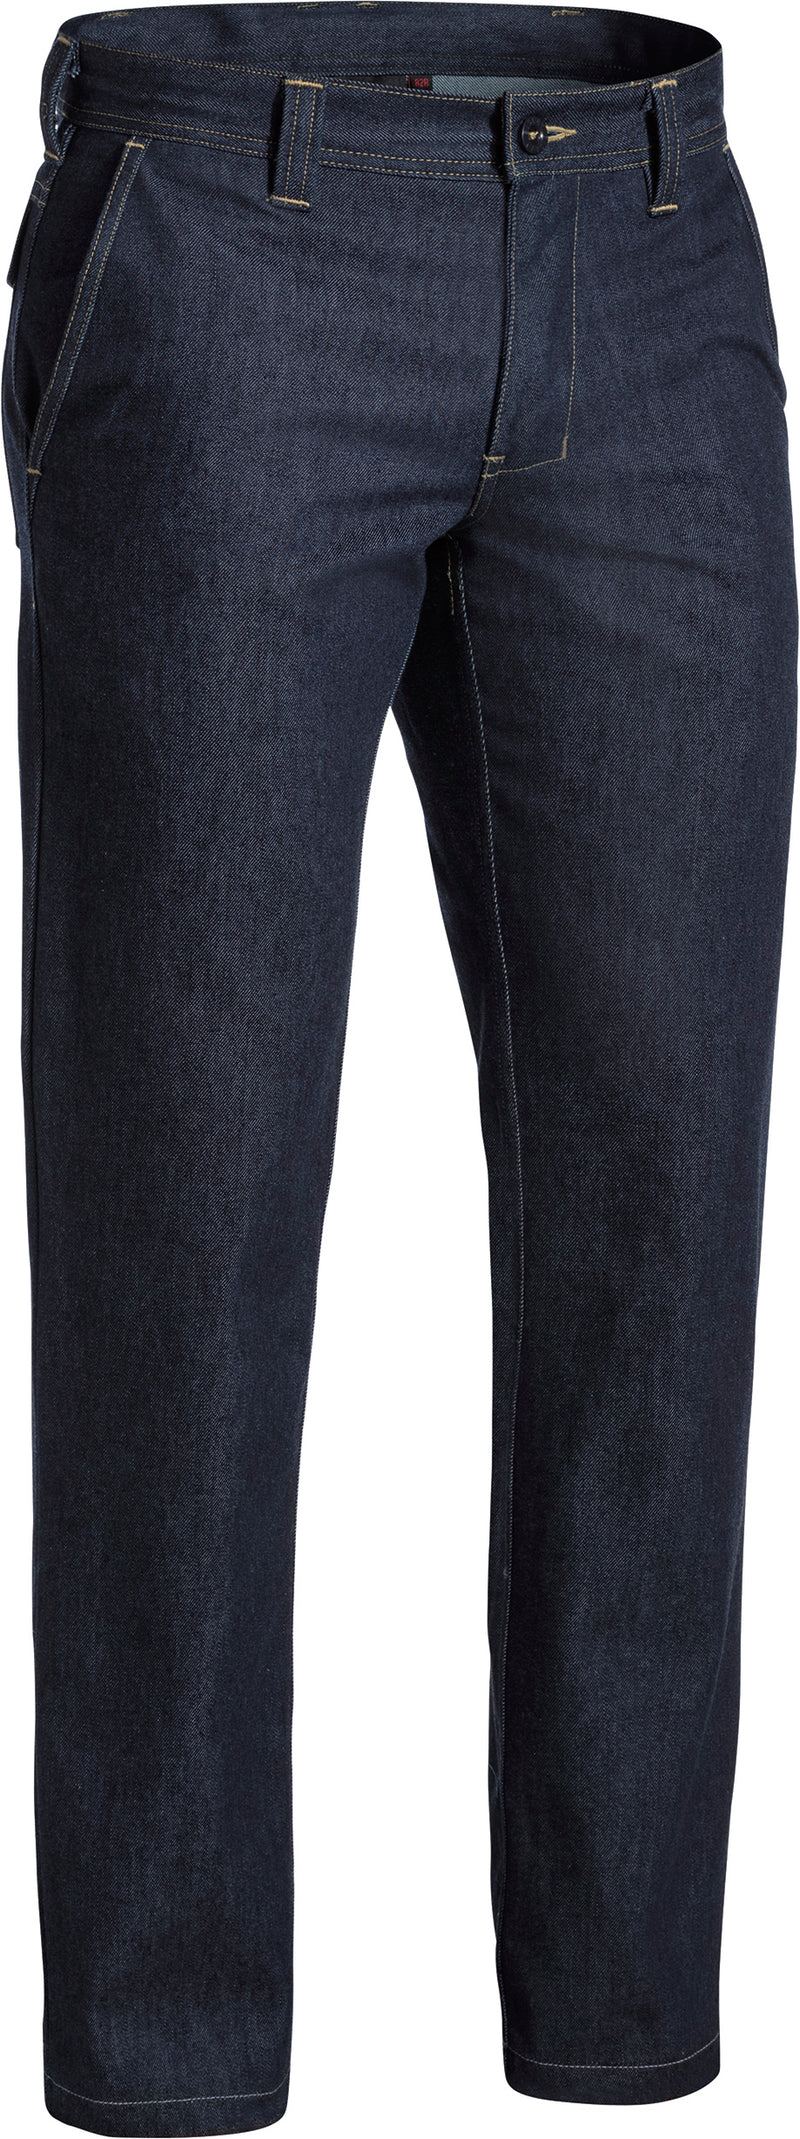 Load image into Gallery viewer, Wholesale BP8091 Bisley FR Denim Jeans - Regular Printed or Blank
